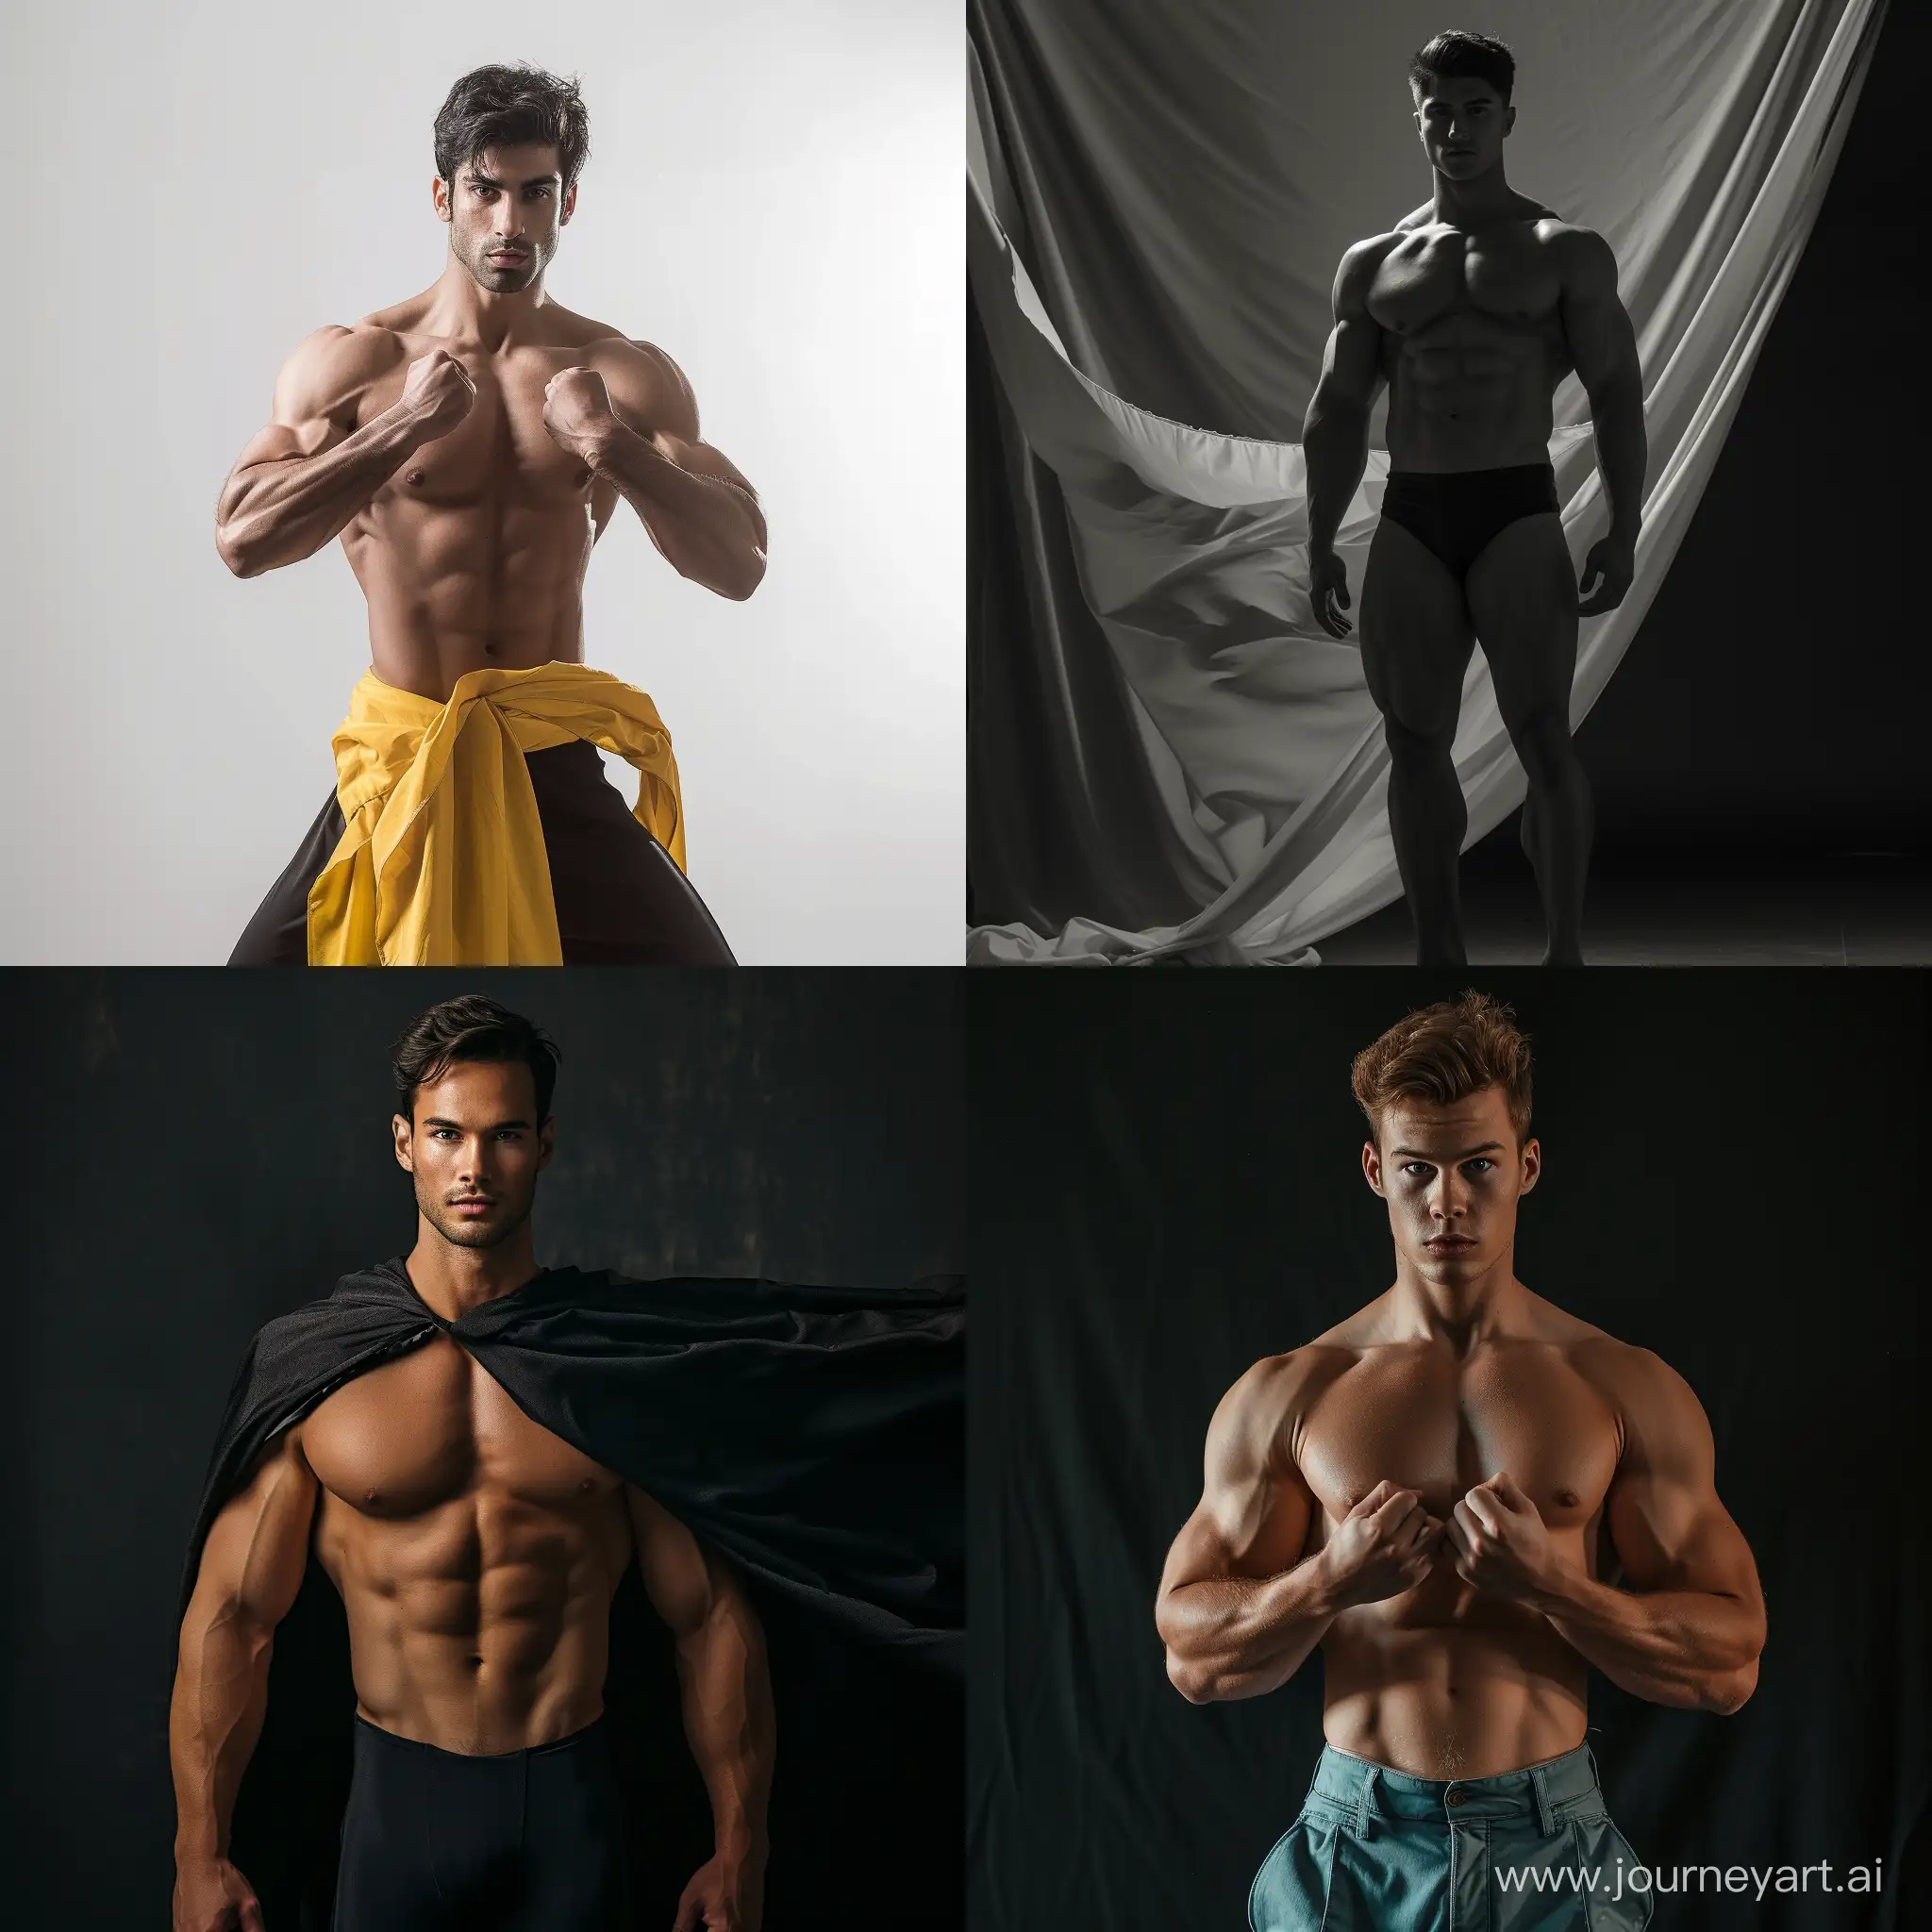 Dynamic-Male-Model-Posed-in-Striking-Full-Body-Profile